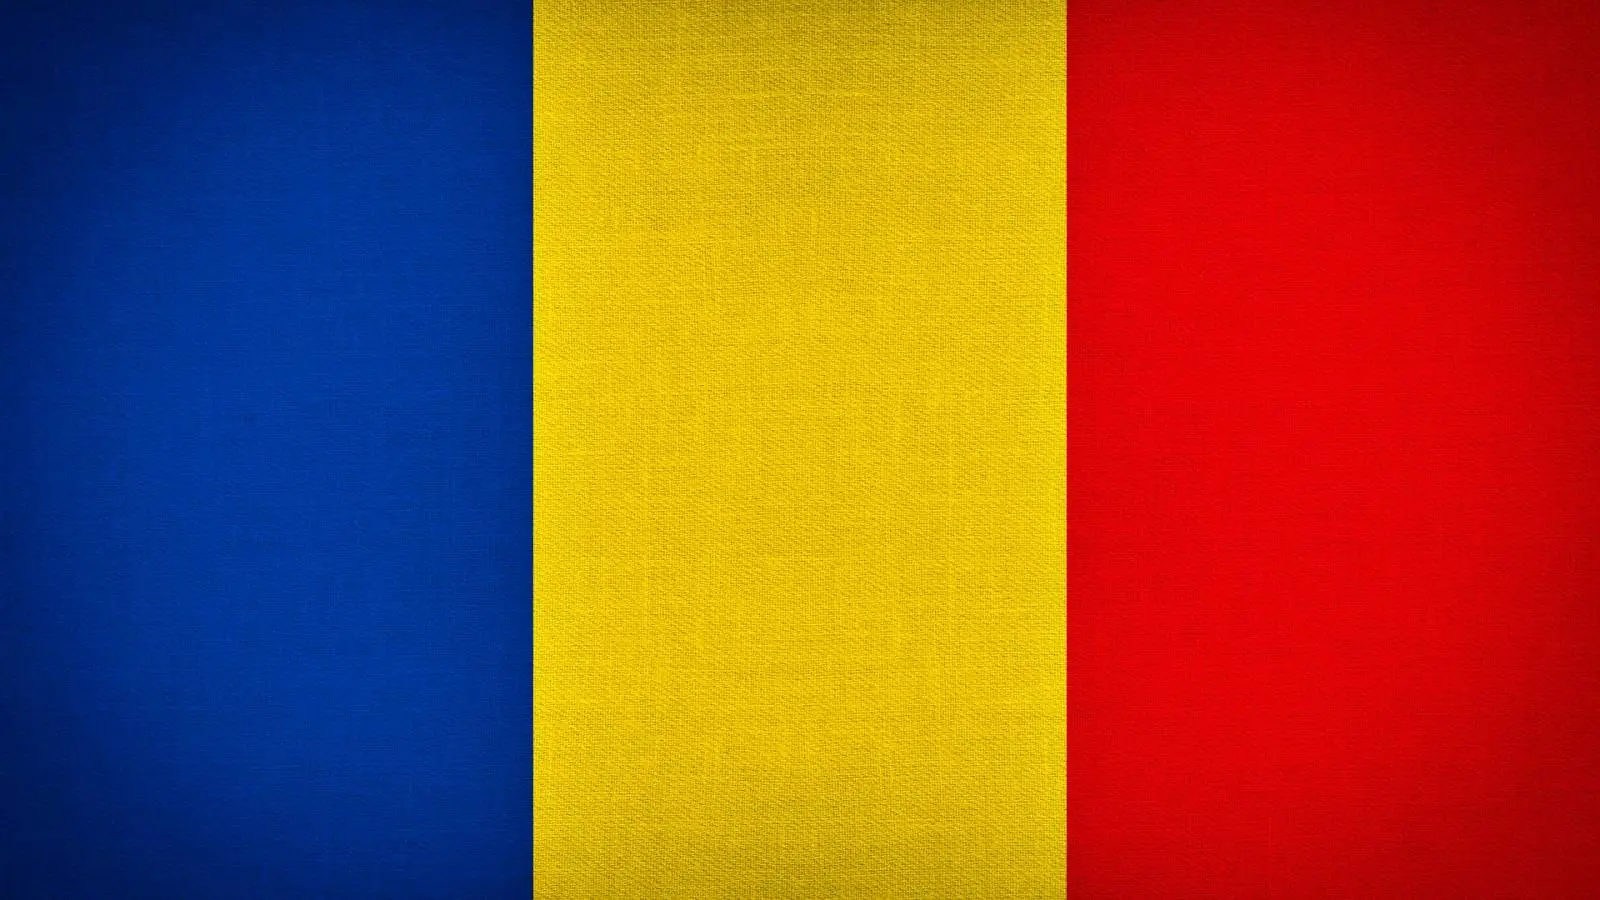 Il problema dell'annuncio last minute in Romania preoccupa milioni di persone